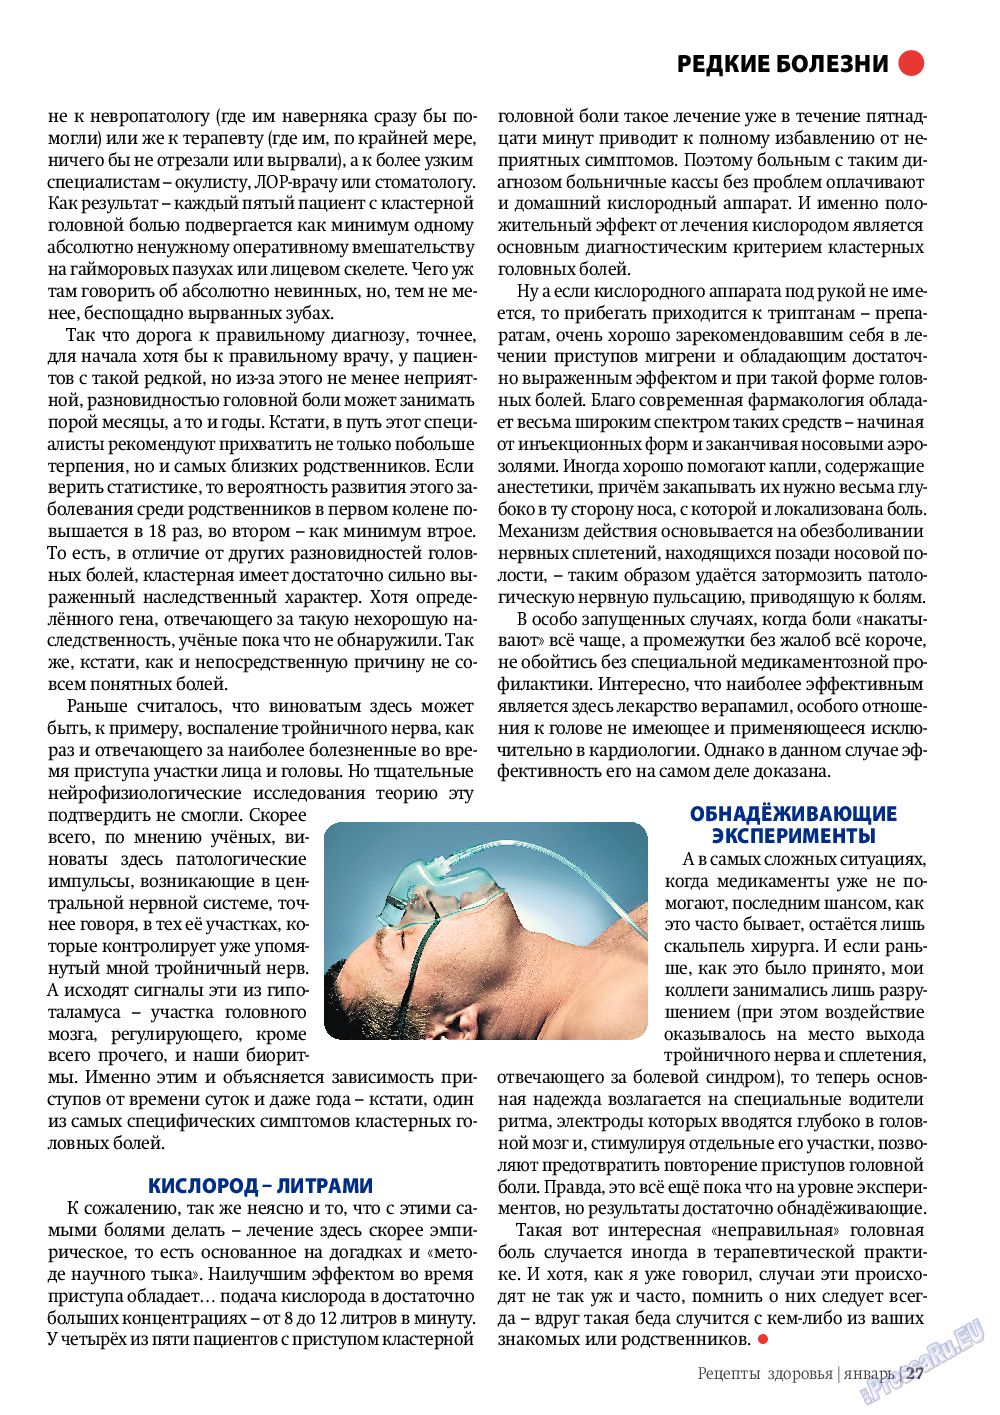 Рецепты здоровья, журнал. 2012 №1 стр.27